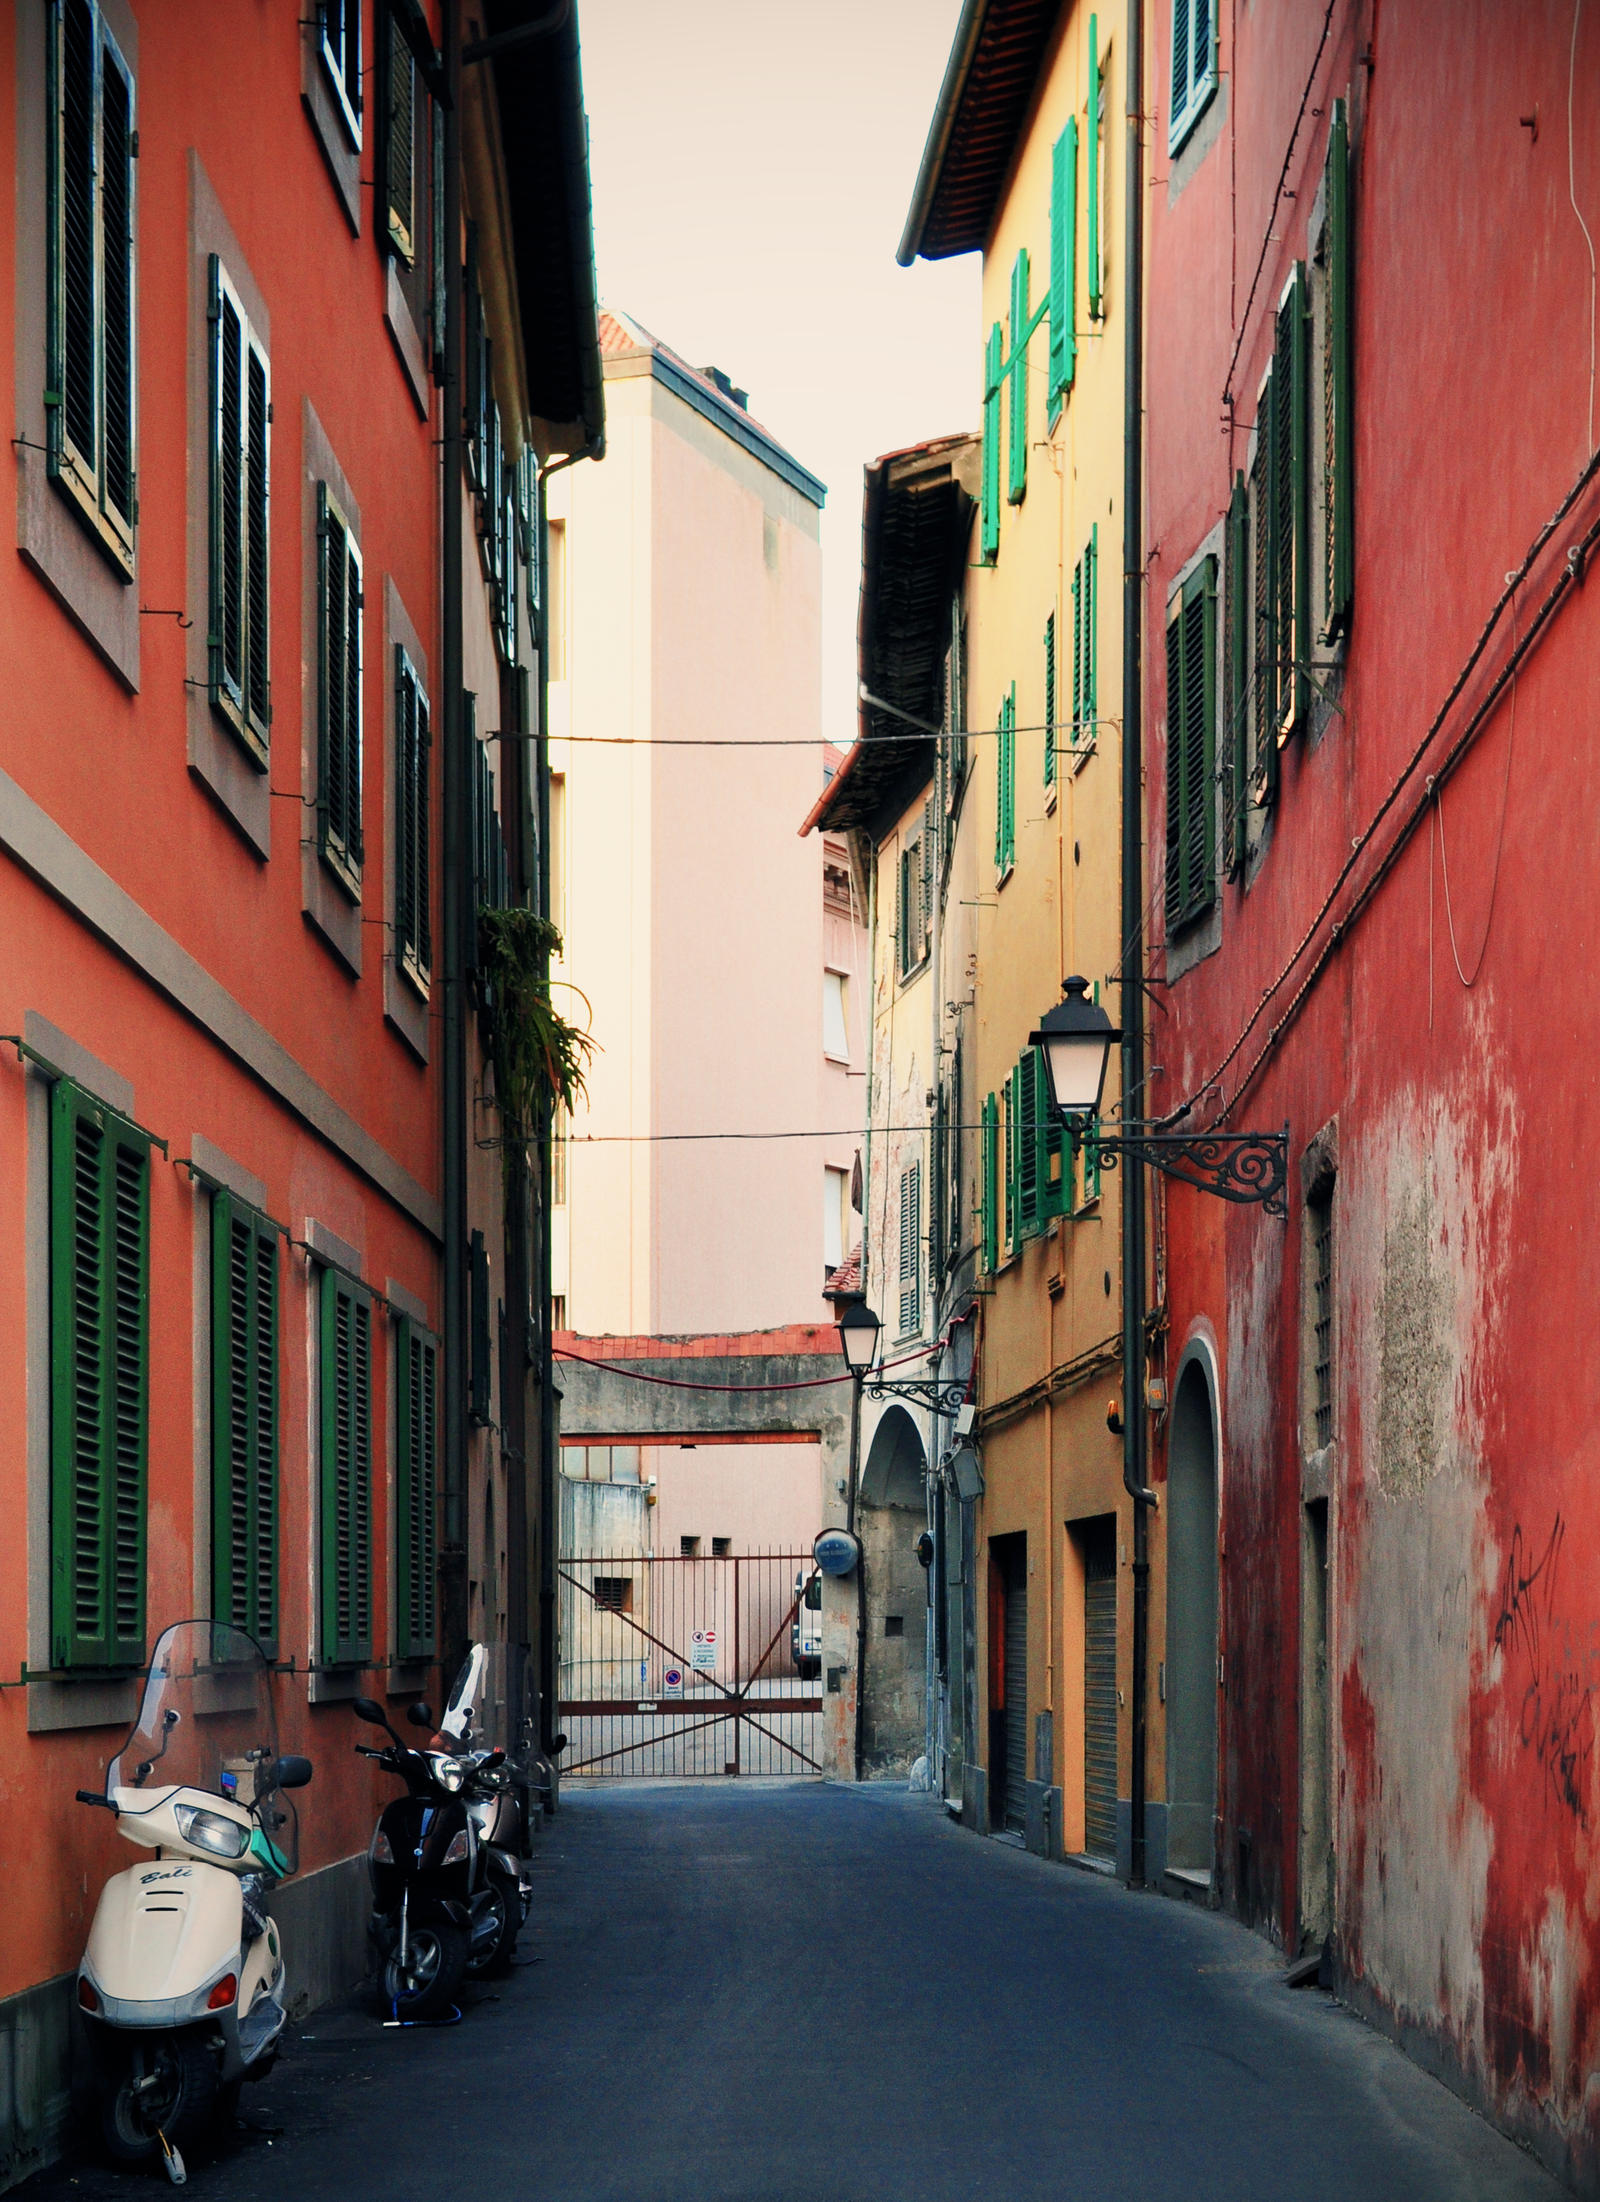 Italian street